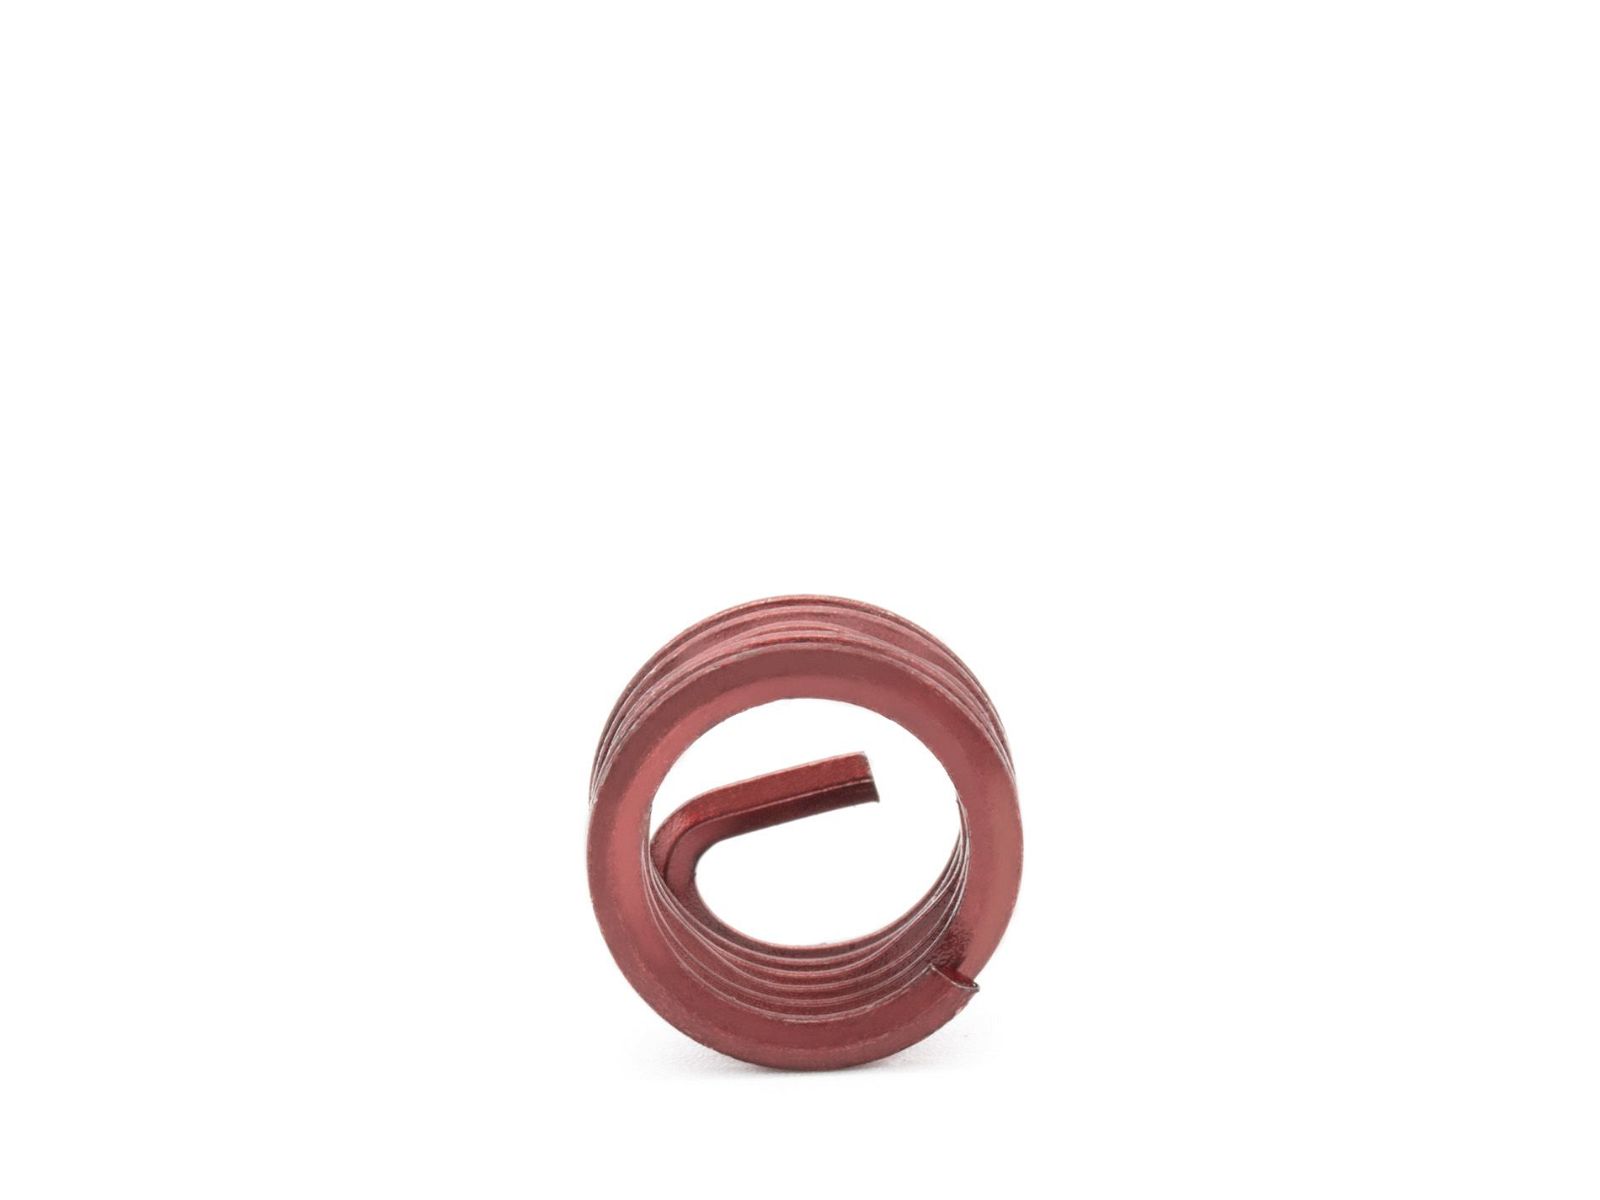 BaerCoil Wire Thread Inserts M 6 x 1.0 - 1.0 D (6 mm) - screw grip (screw locking) - 10 pcs.